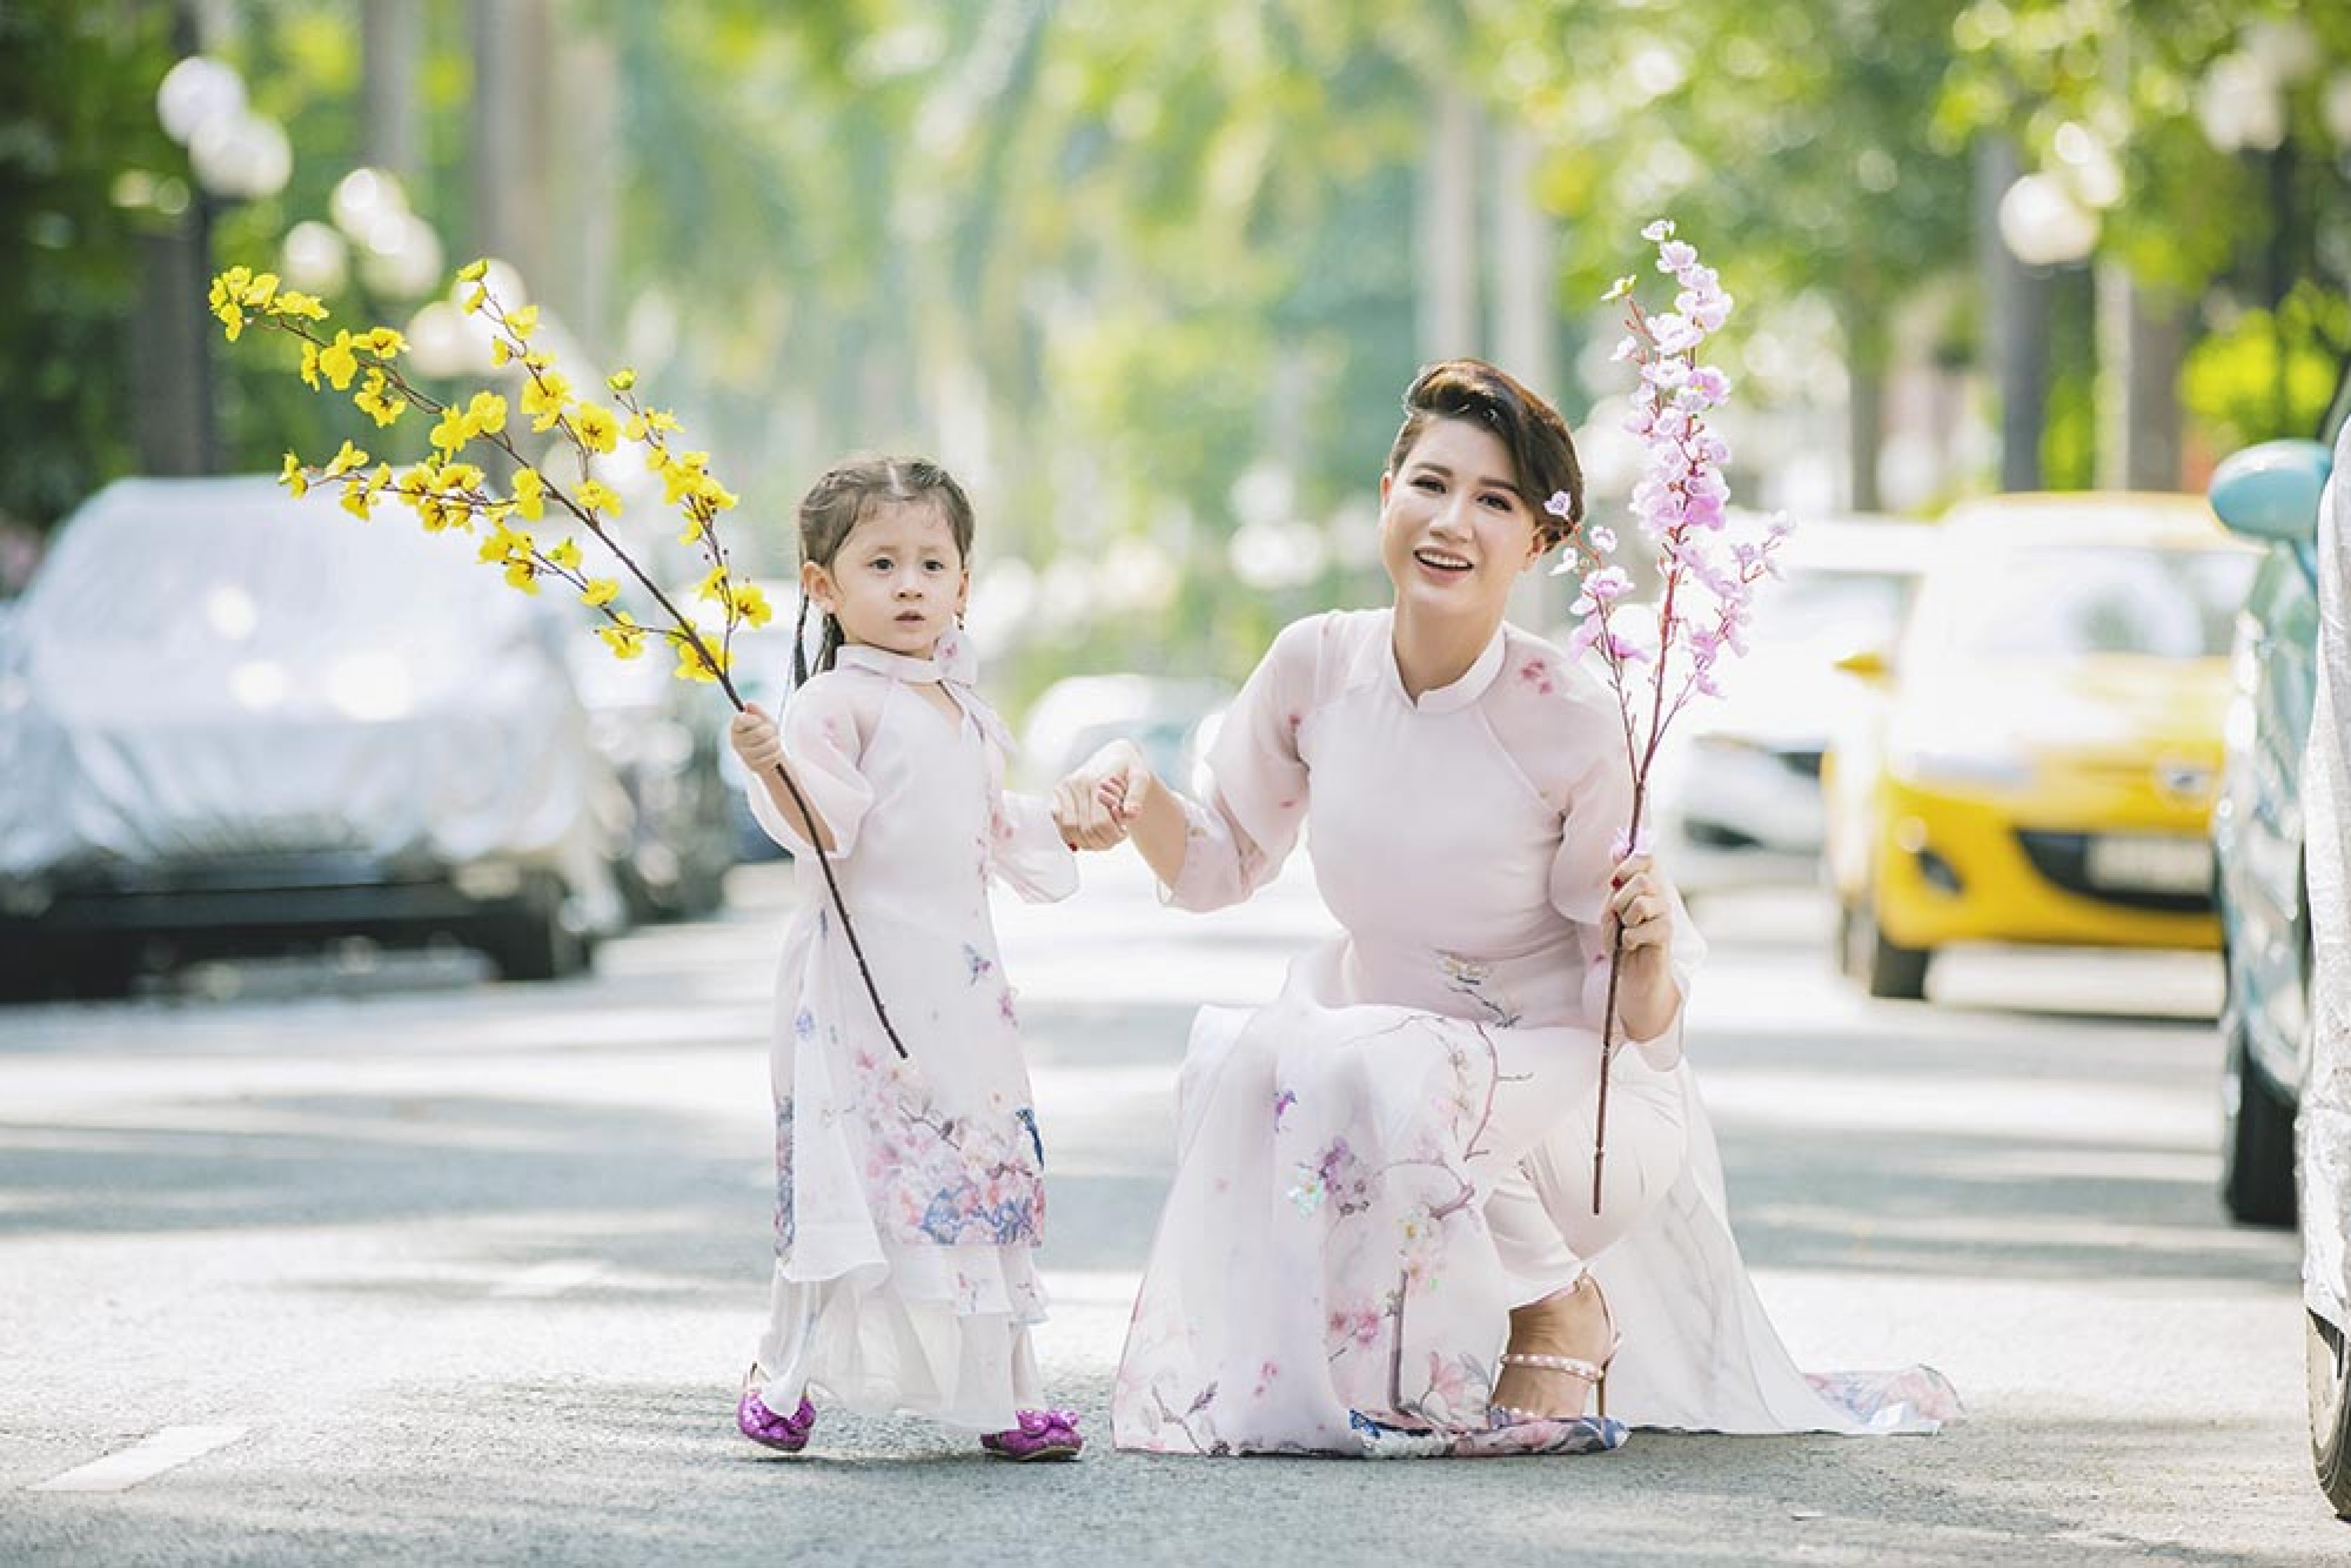 Sang năm 2019, ngoài duy trì công việc kinh doanh và tham gia một số show diễn thời trang yêu thích, Trang Trần tiếp tục duy trì hoạt động thiện nguyện để giúp đỡ những mảnh đời khó khăn.